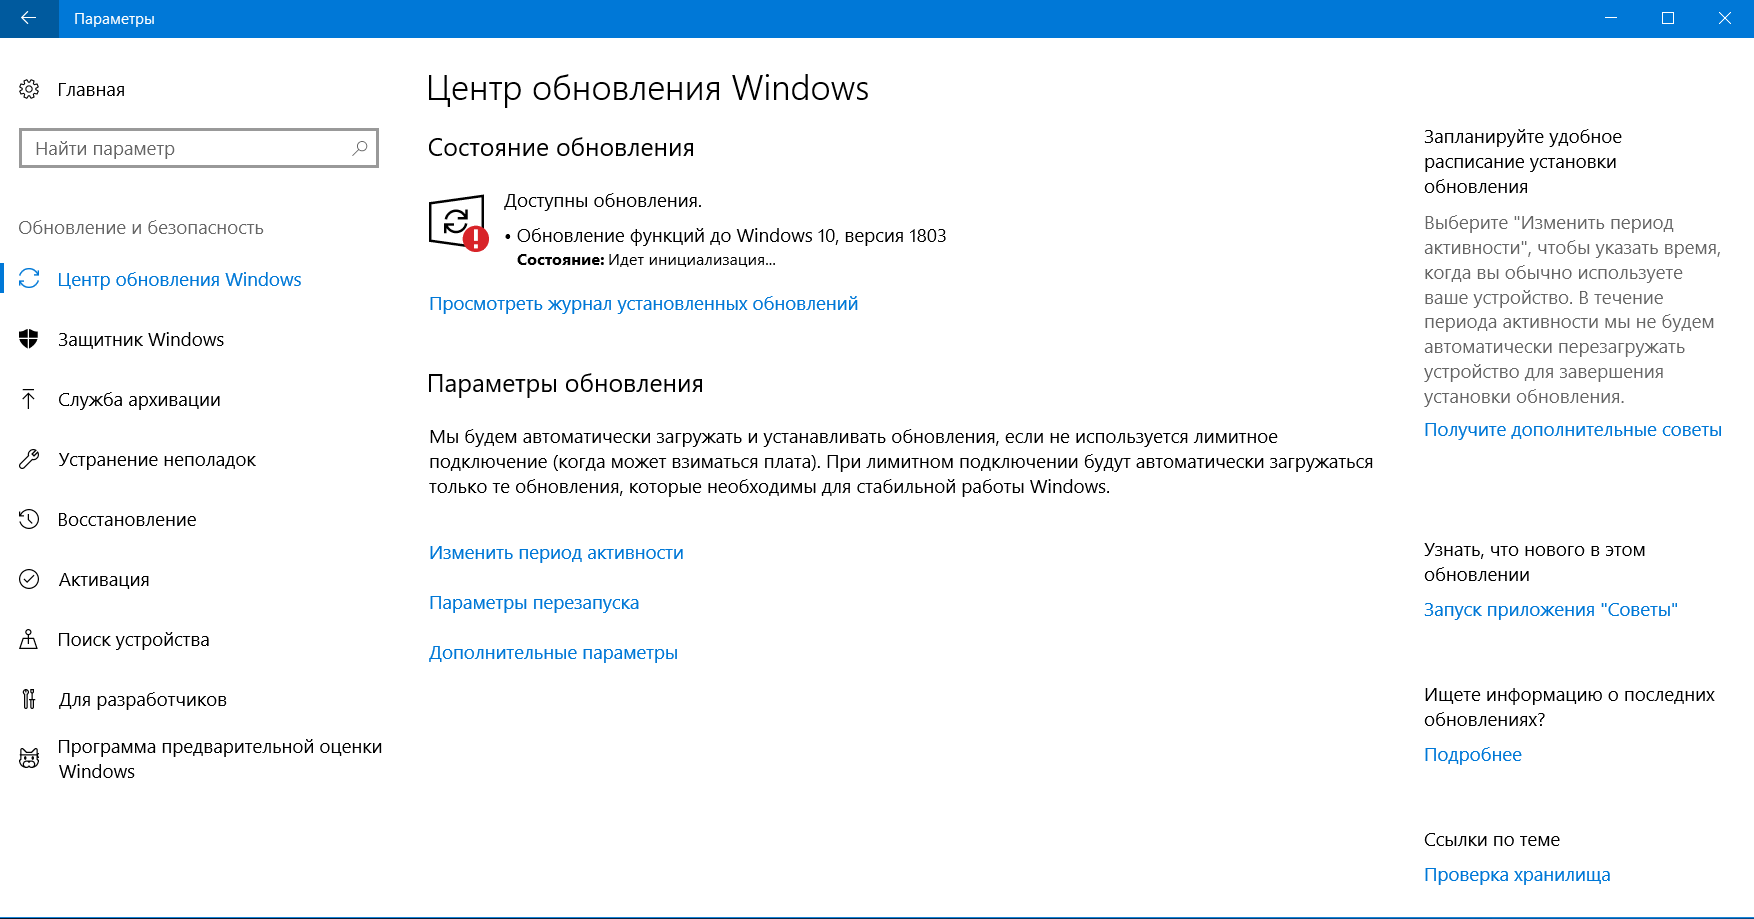 Предварительные обновления windows 10. Обновление виндовс 10. Центр обновления виндовс. Установка обновлений Windows 10. Параметры обновления Windows.